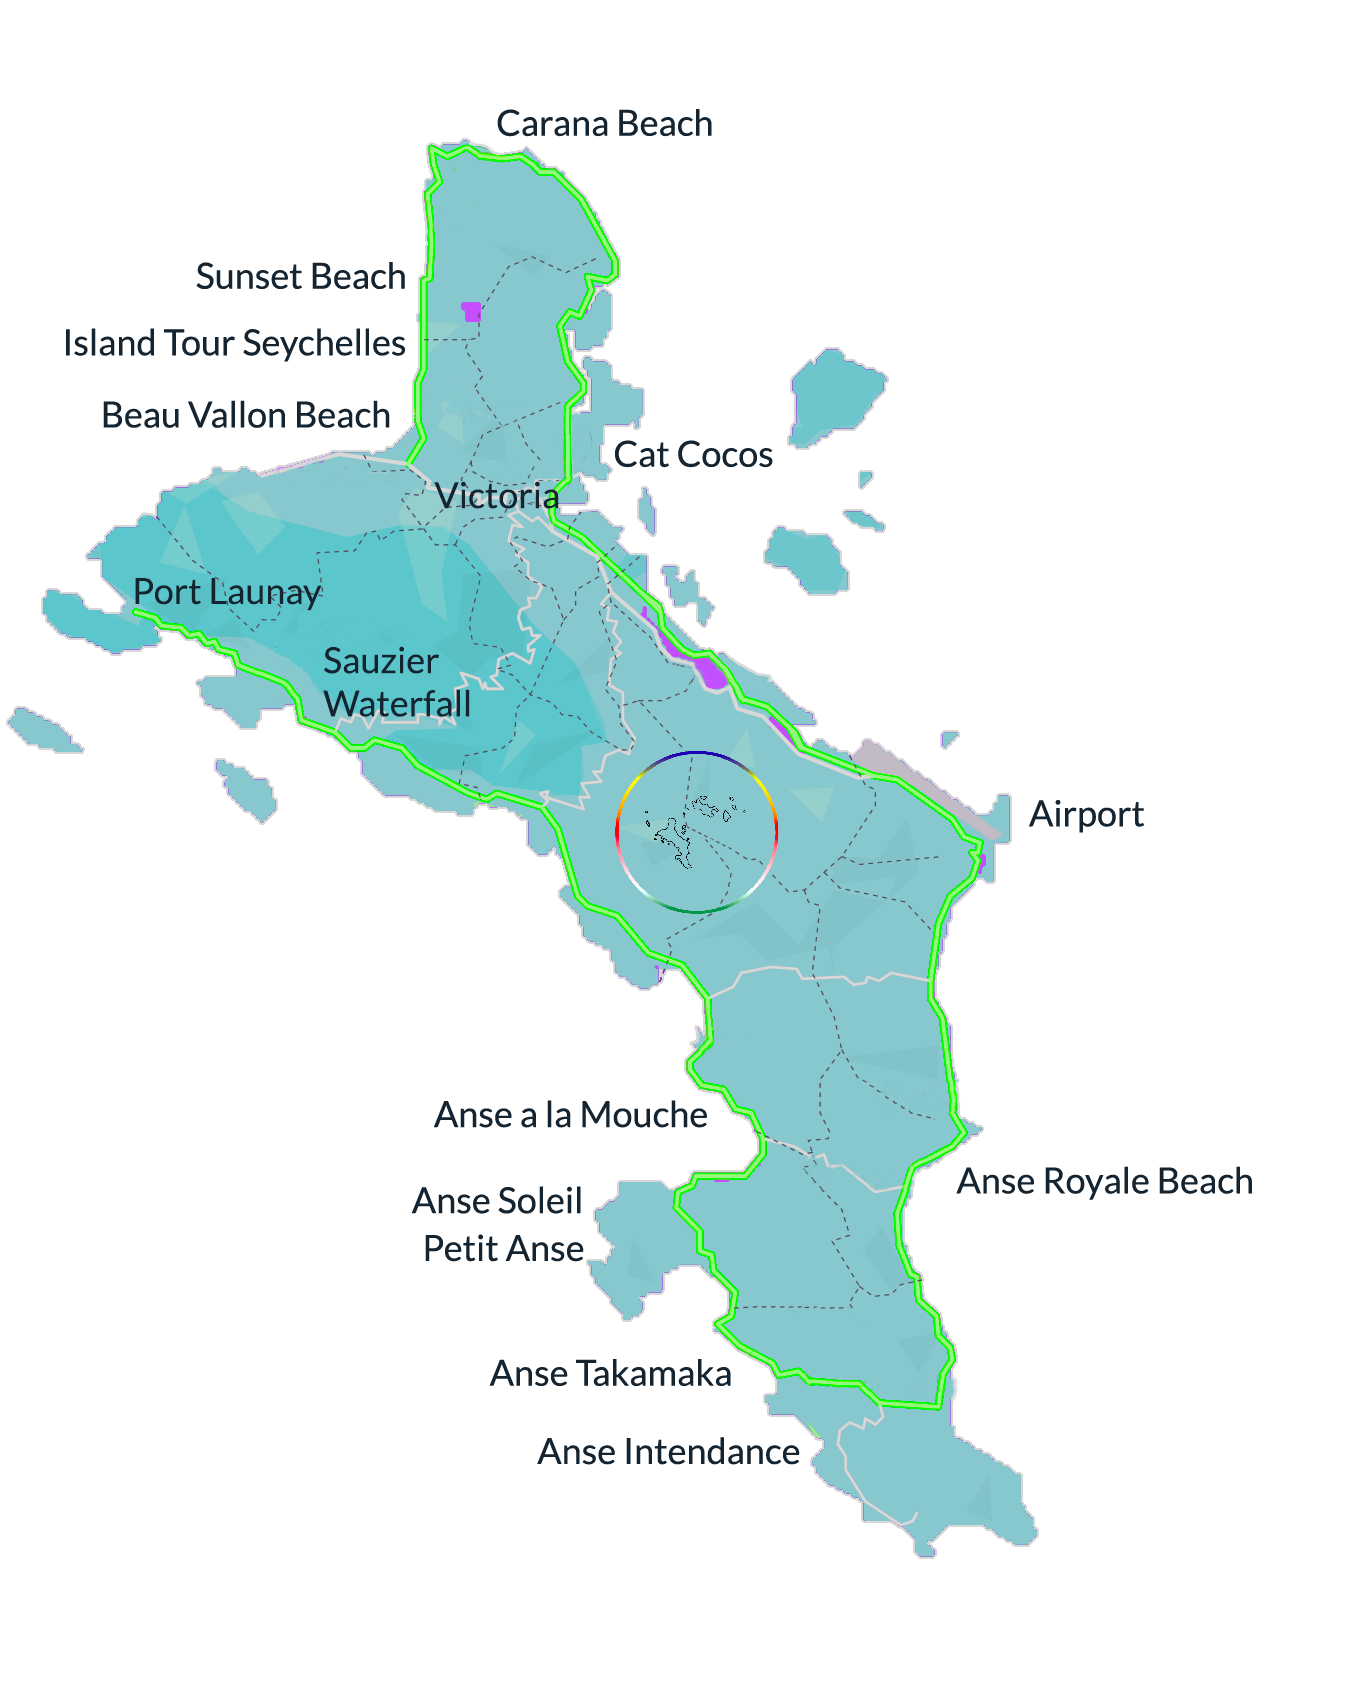 Mapa de Mahé con todas las playas posibles que puede elegir para su recorrido personal